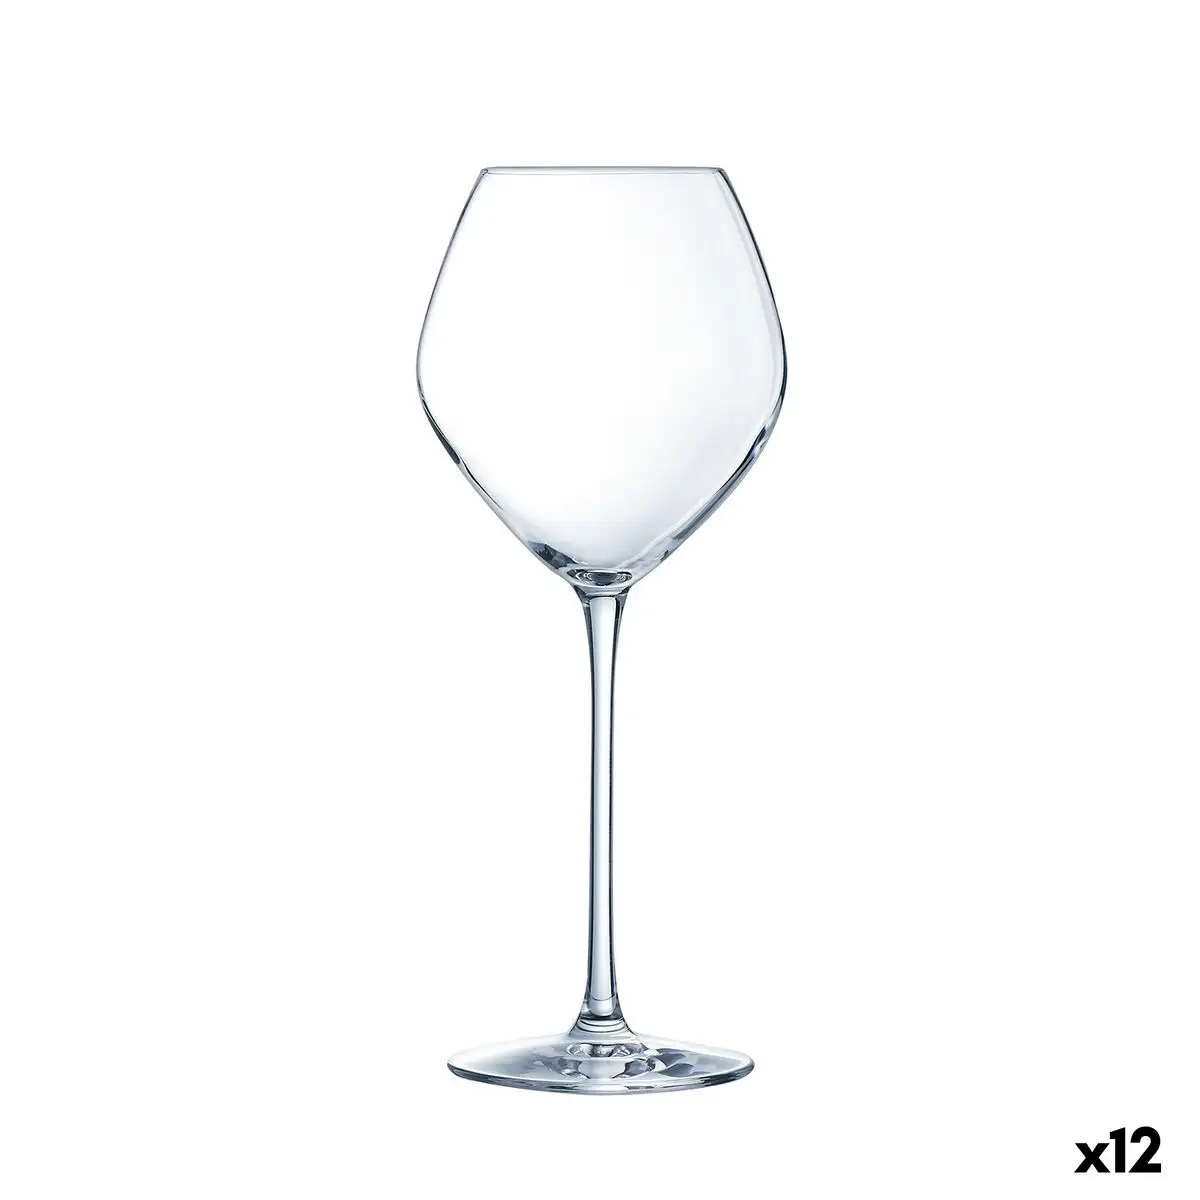 Verre a vin luminarc grand chais verre transparent 350 ml 12 unite s_5679. DIAYTAR SENEGAL - Votre Destination Shopping de Confiance. Naviguez à travers notre boutique en ligne et profitez d'une sélection soigneusement choisie de produits qui répondent à toutes vos exigences.